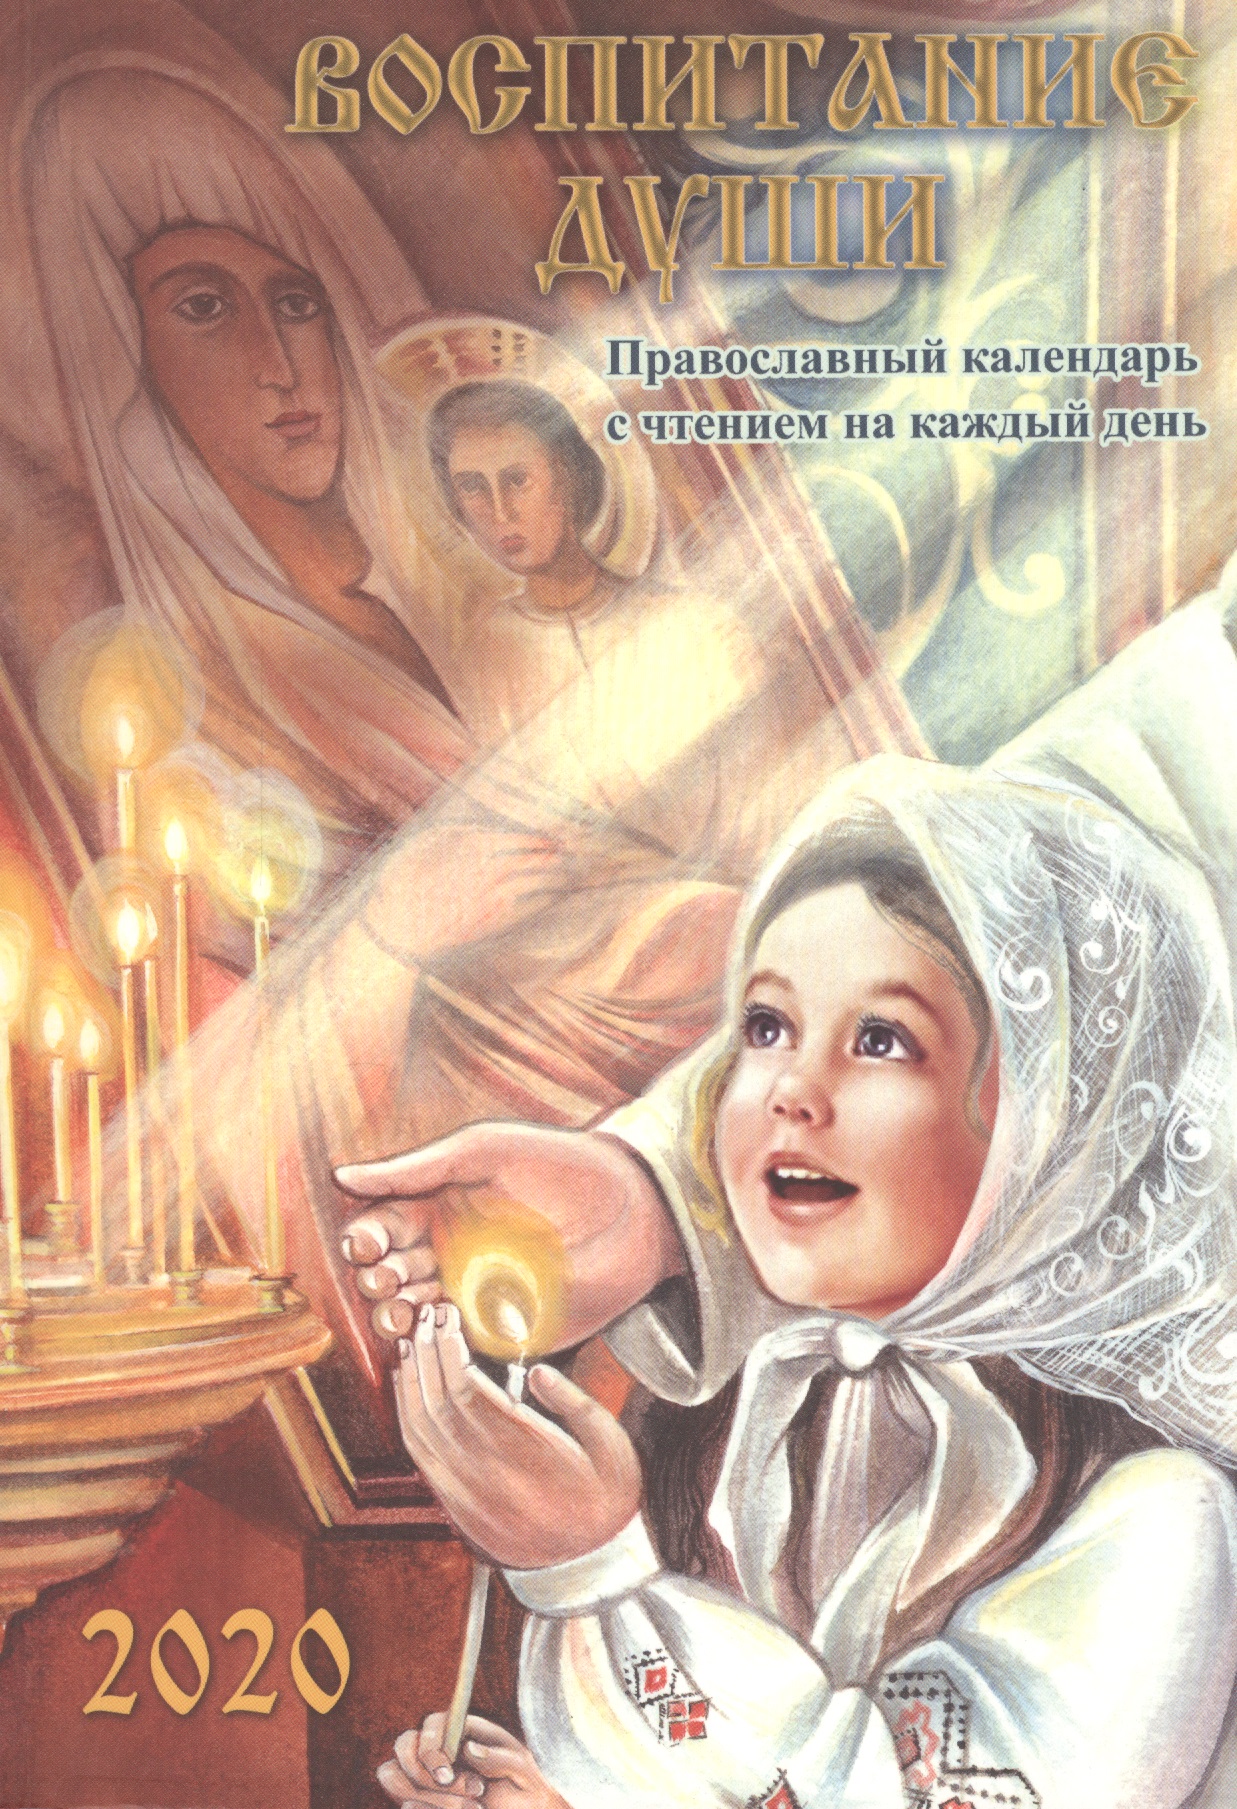 Воспитание души. Православный календарь с чтением на каждый день, 2020 божий лекарь православный календарь на 2020 год с чтением на каждый день